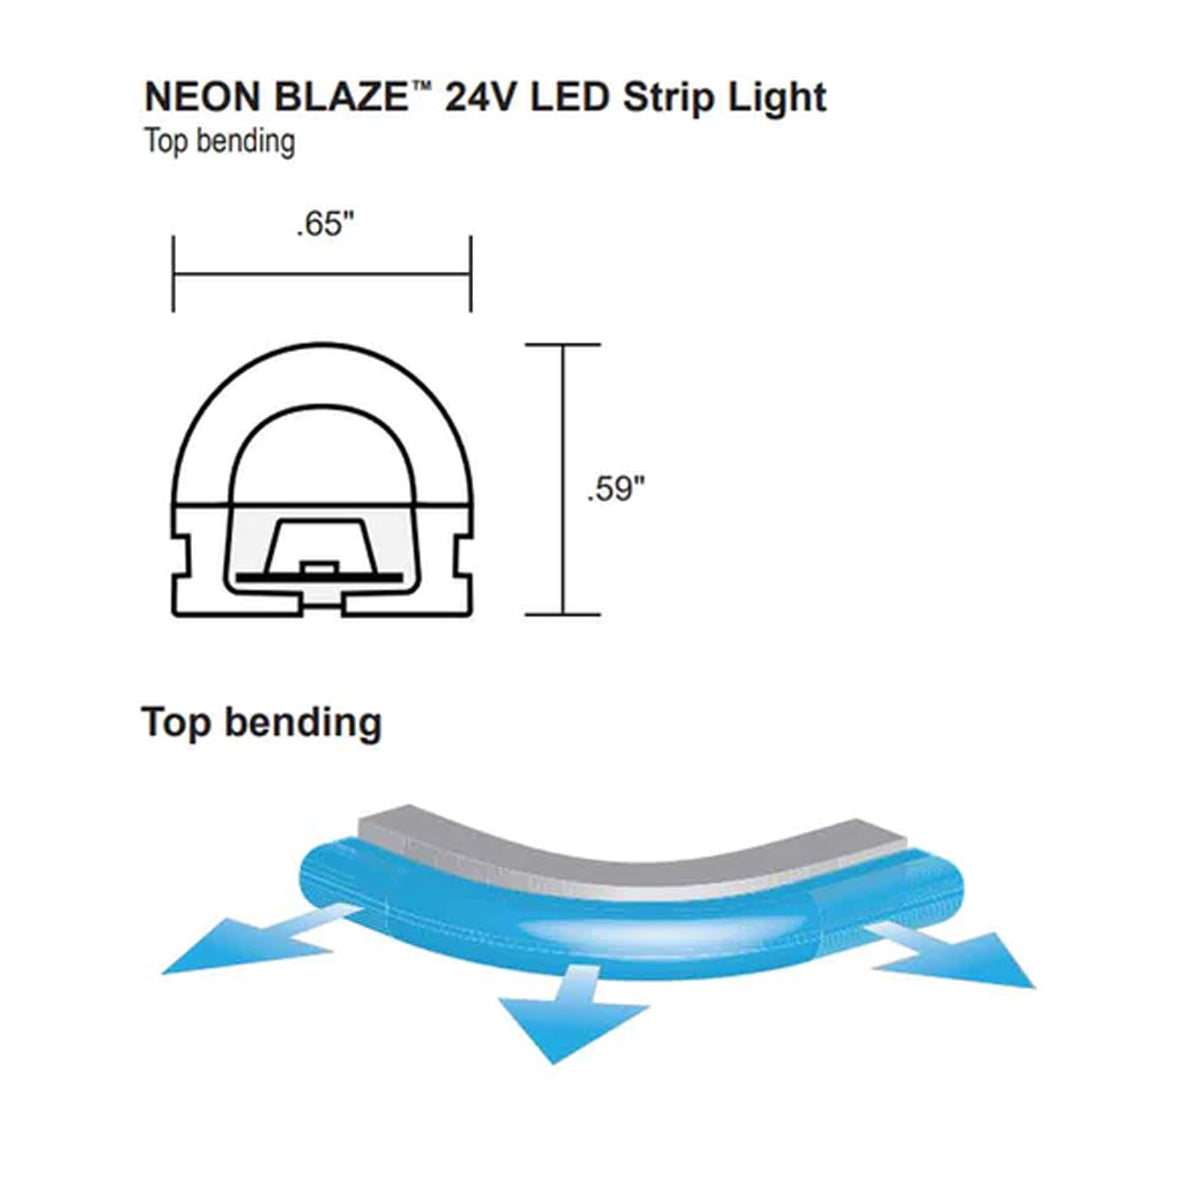 Neon BLAZE LED Neon Strip Light, 24V, Top Bending